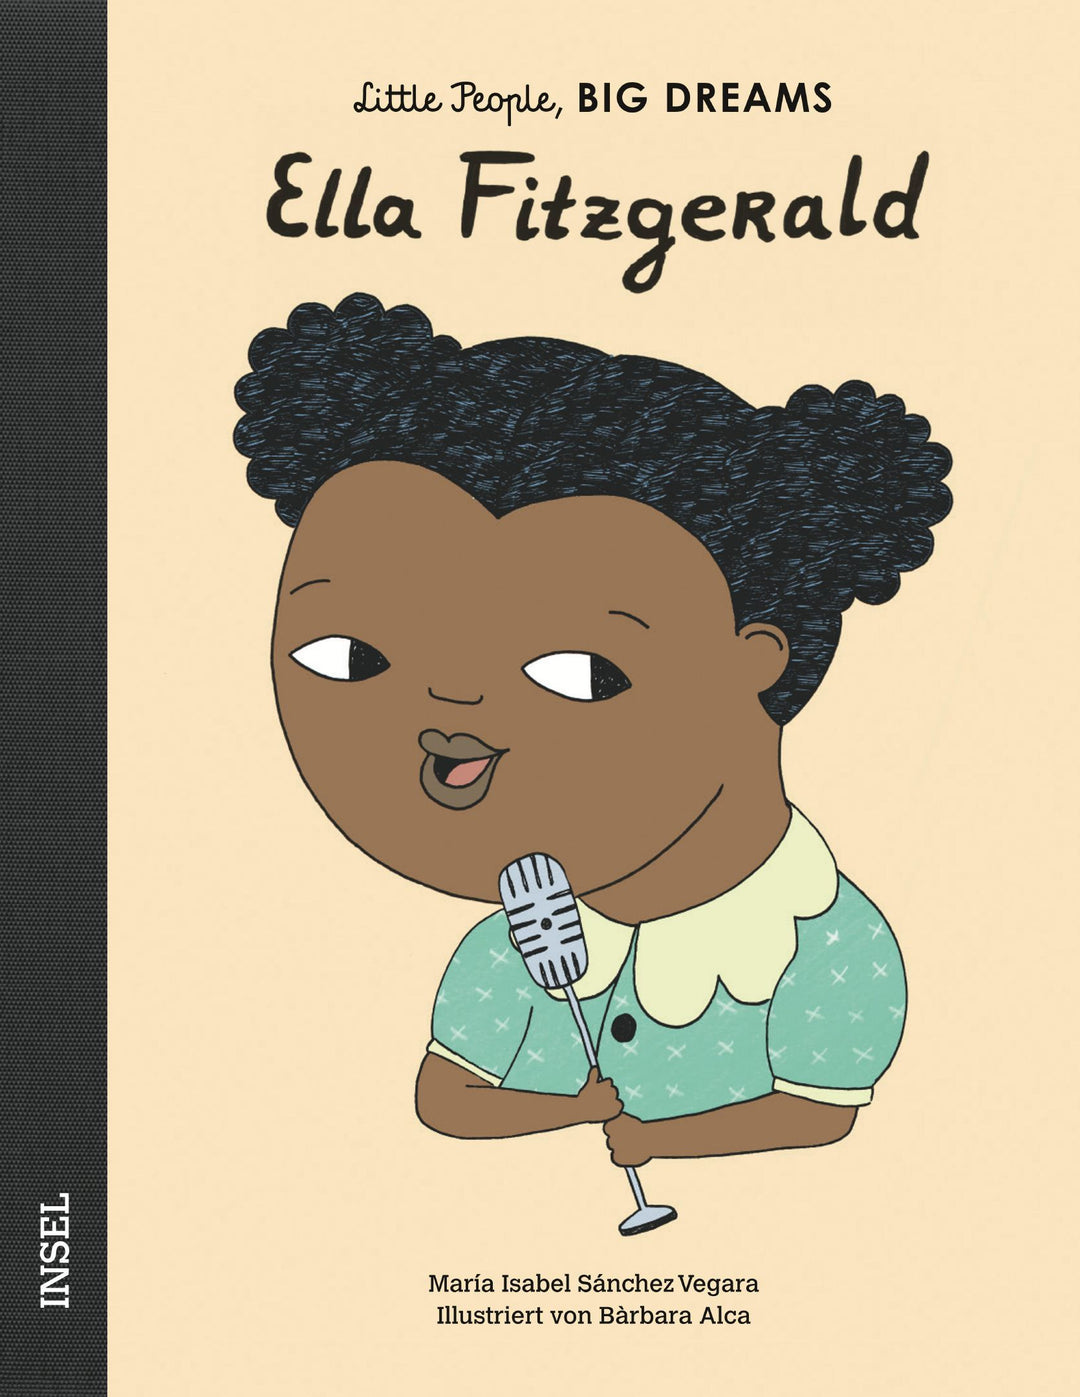 Insel Verlag Bilderbuch Little People, Big Dreams auf Deutsch: Ella Fitzgerald